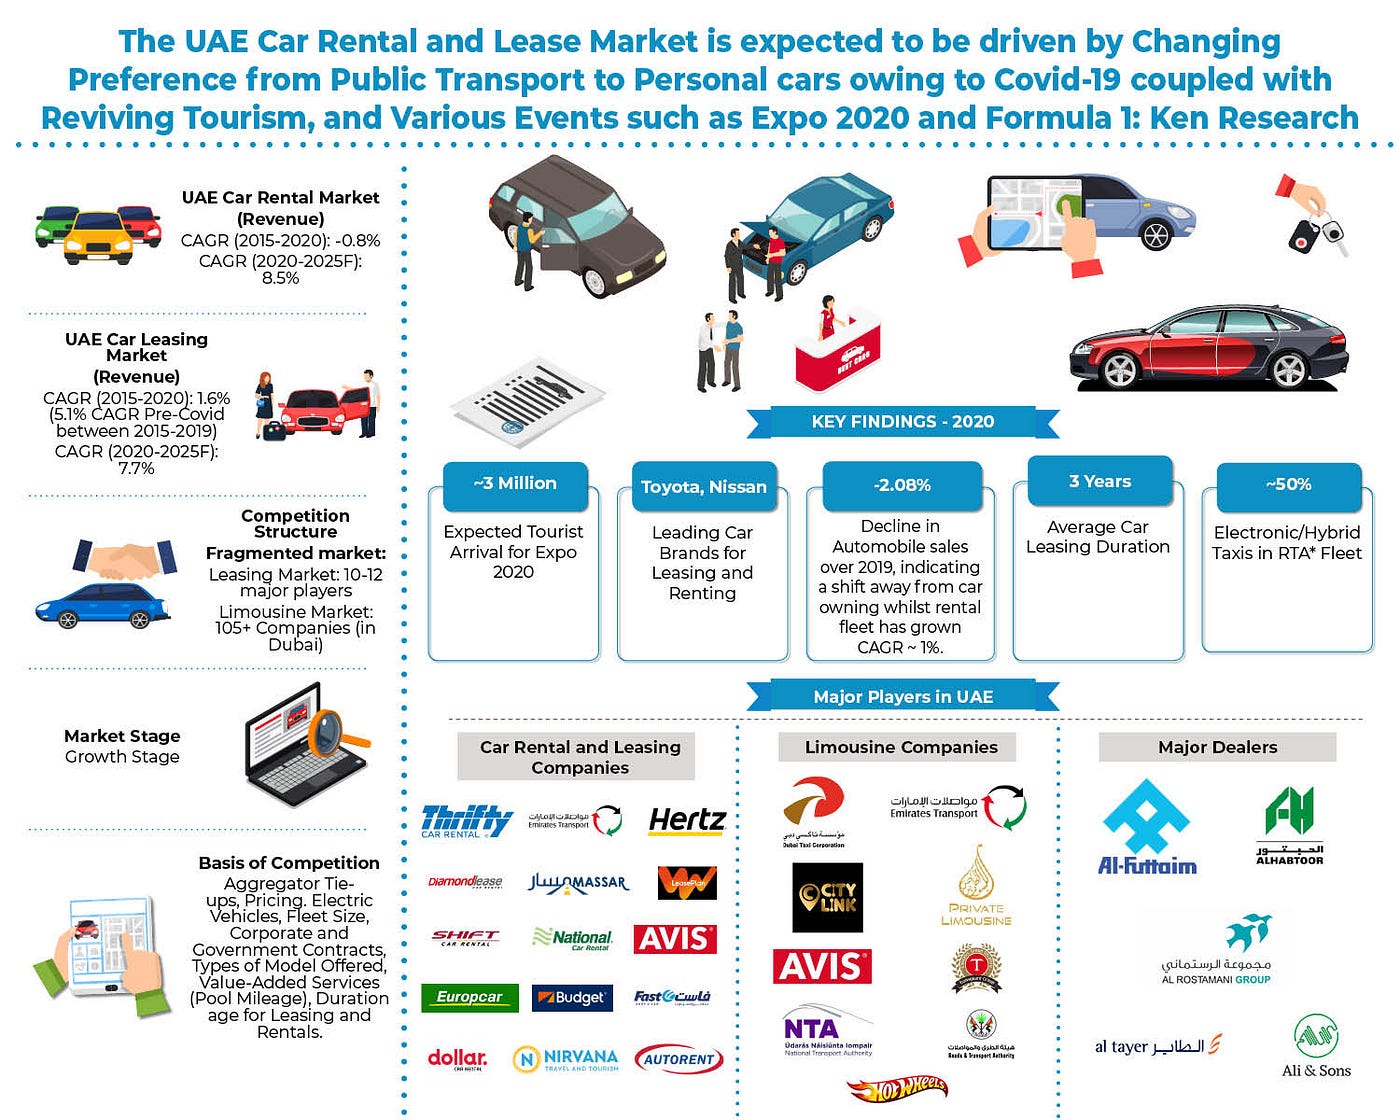 توقعات سوق تأجير السيارات والليموزين في الإمارات العربية المتحدة حتى عام  2025 — مدفوعة بإحياء السياحة ، غيرت تفضيل العملاء من النقل العام إلى  السيارات الشخصية بسبب Covid-19 | by Kushalkenreasearch | Medium